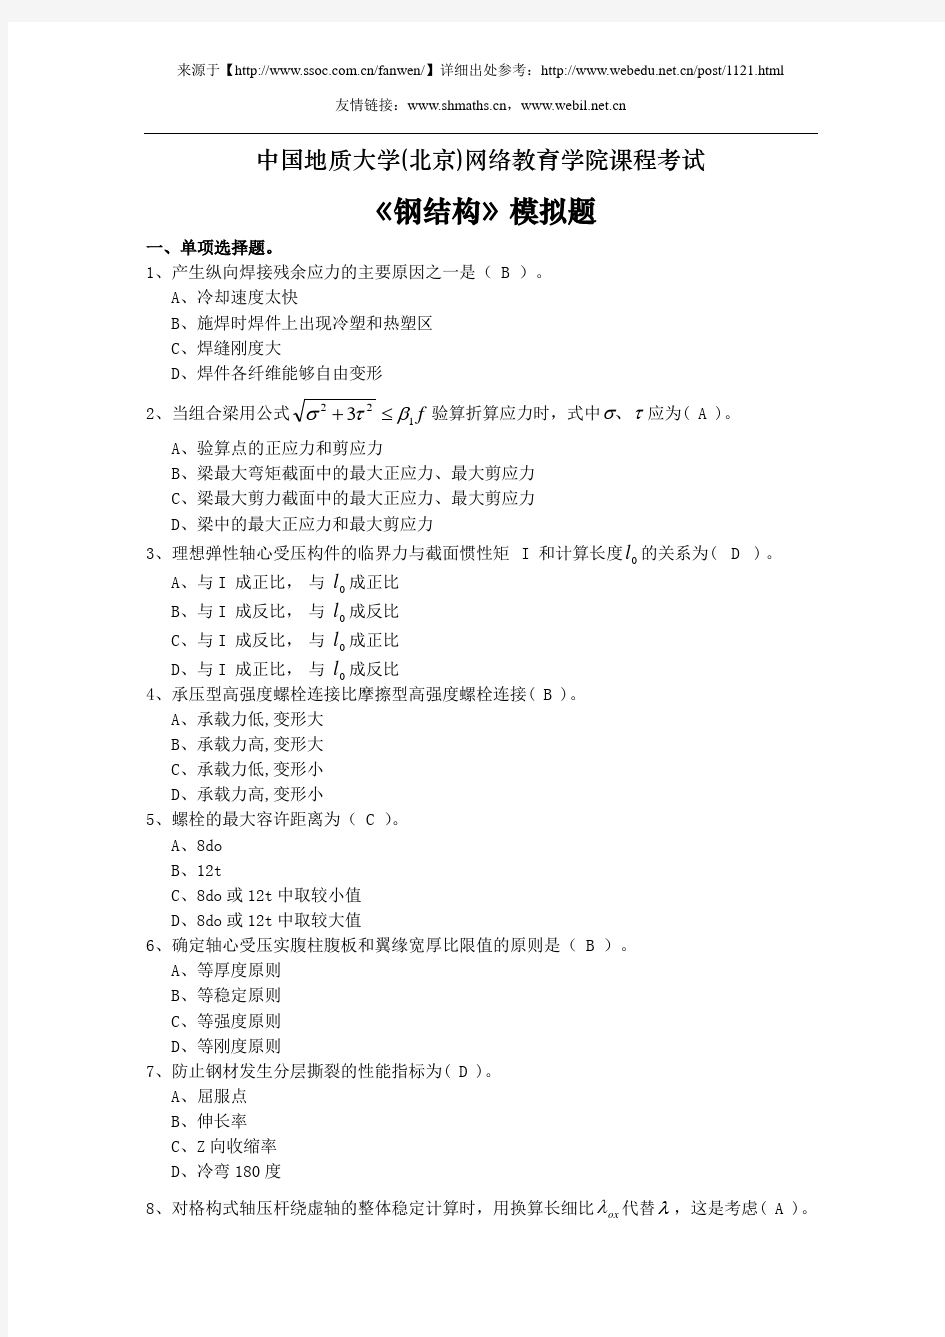 中国地质大学(北京)网络教育学院课程考试